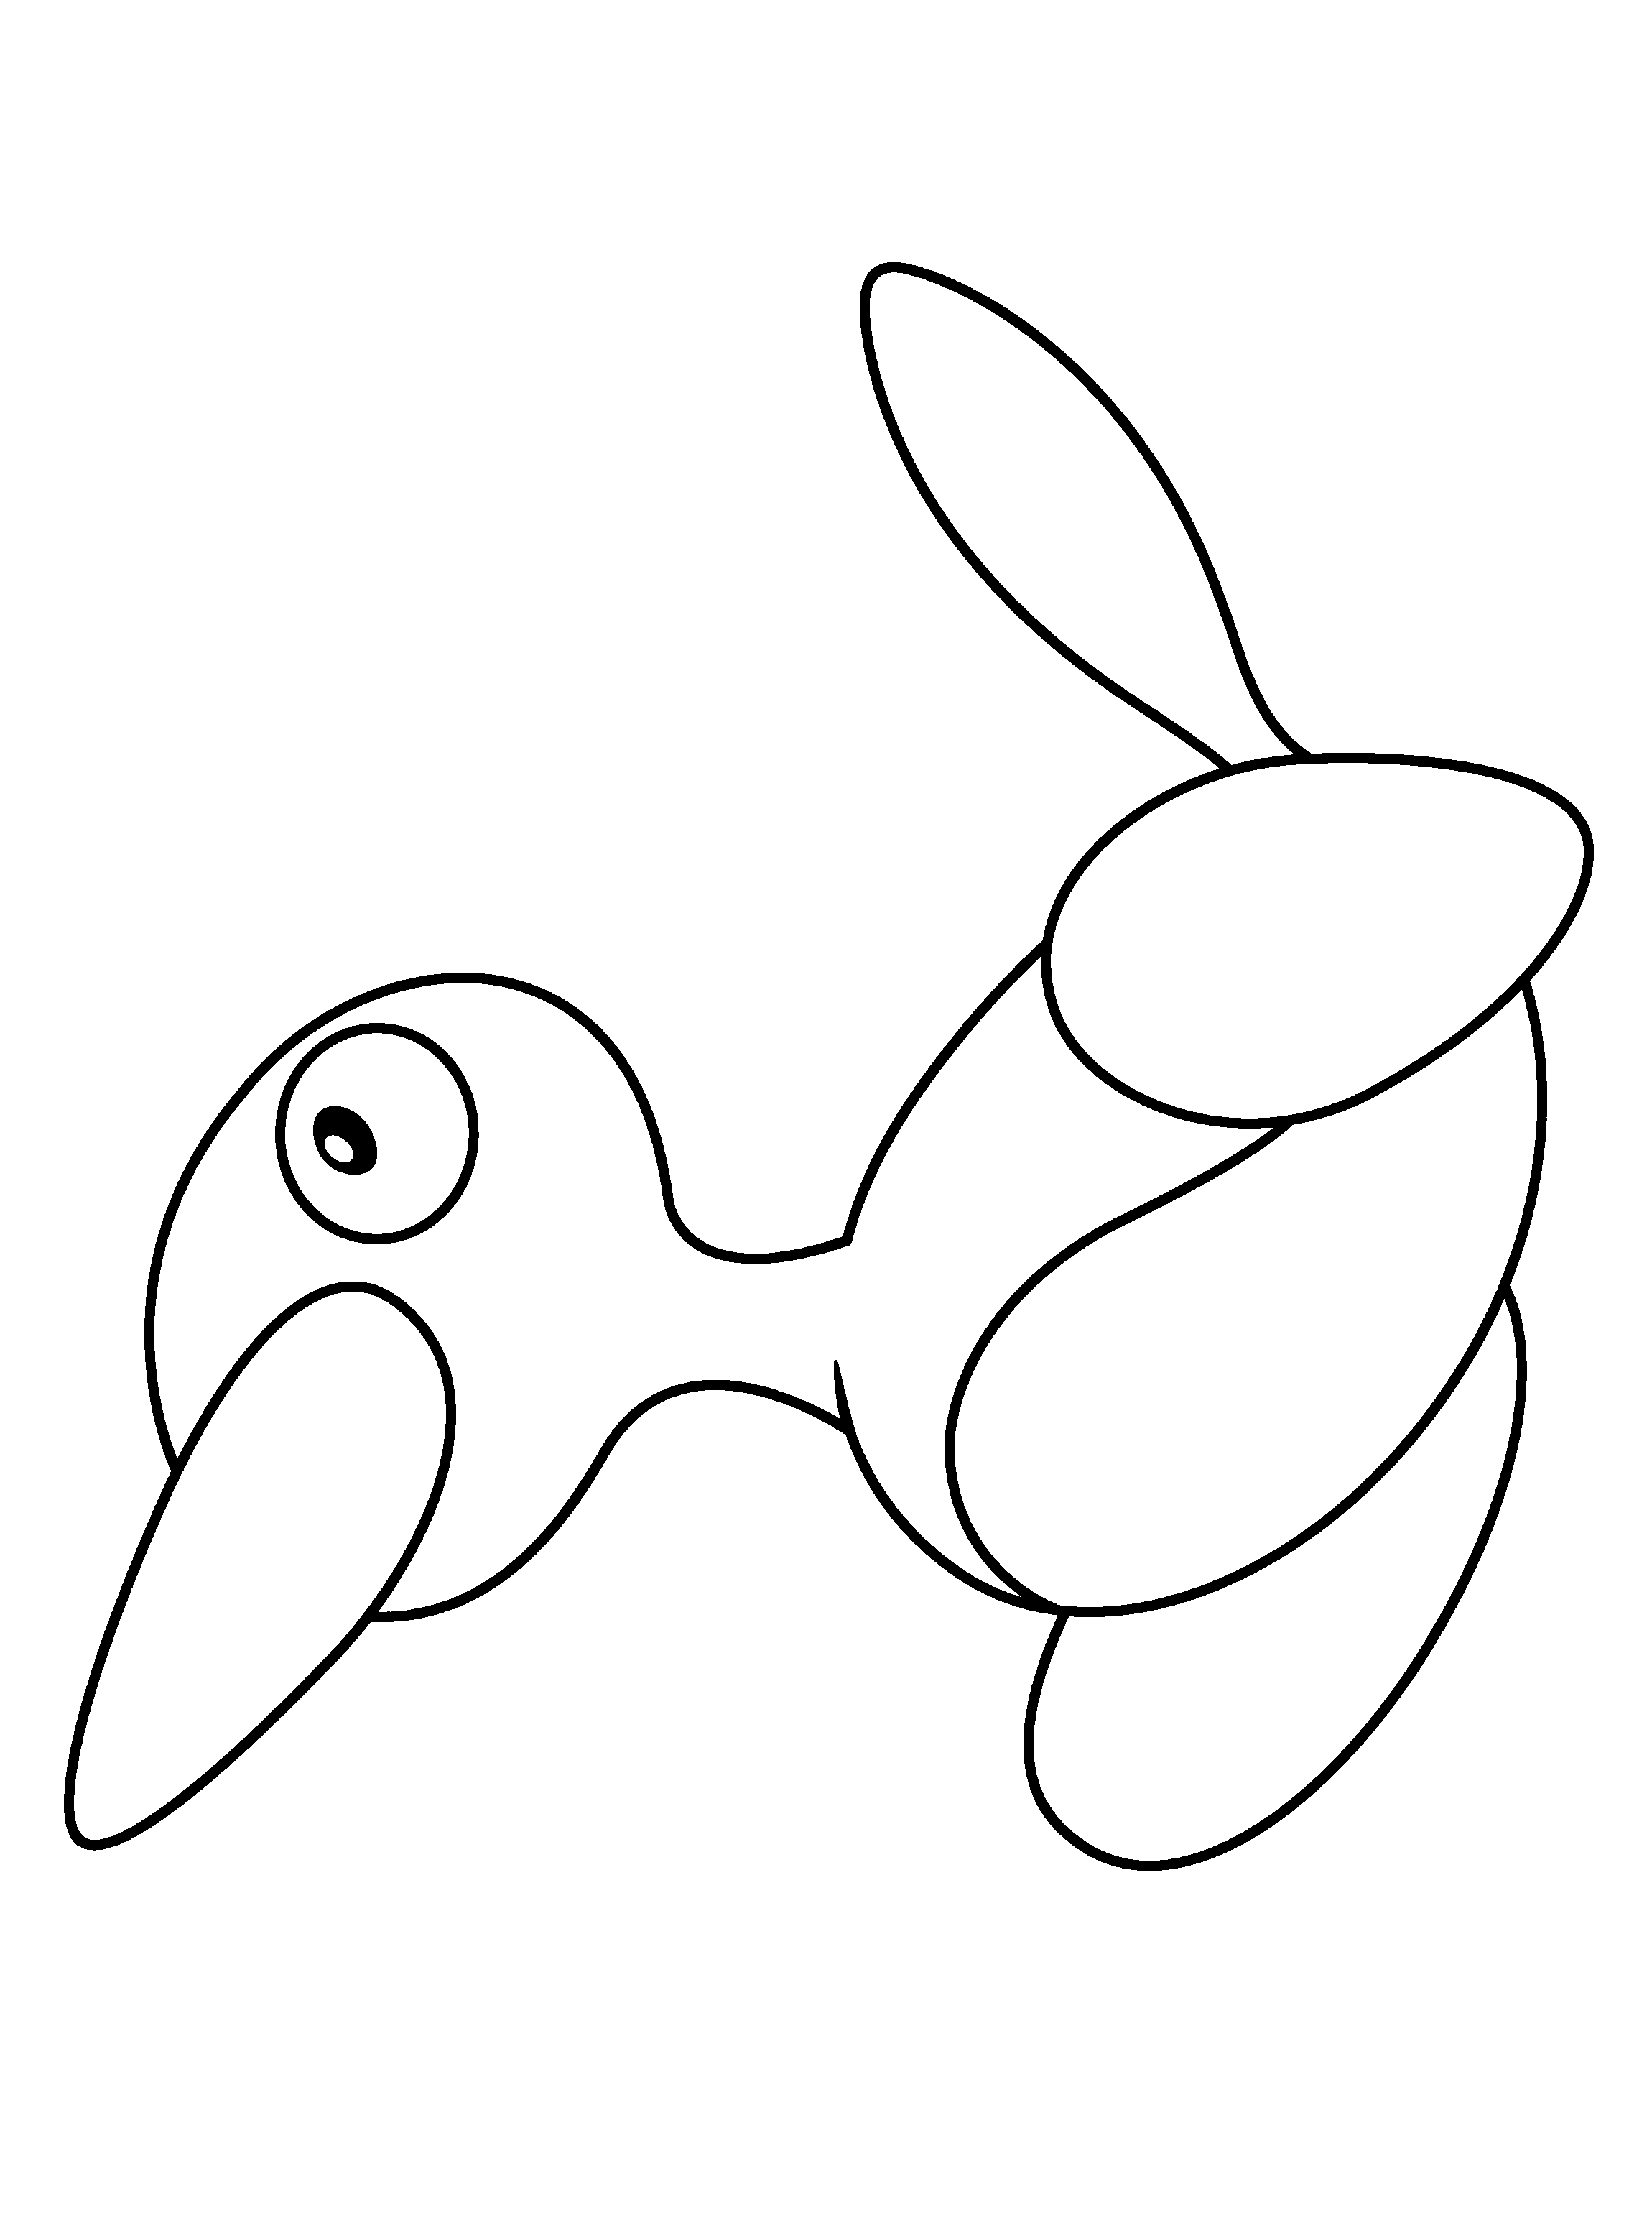 dibujo-para-colorear-pokemon-imagen-animada-0076